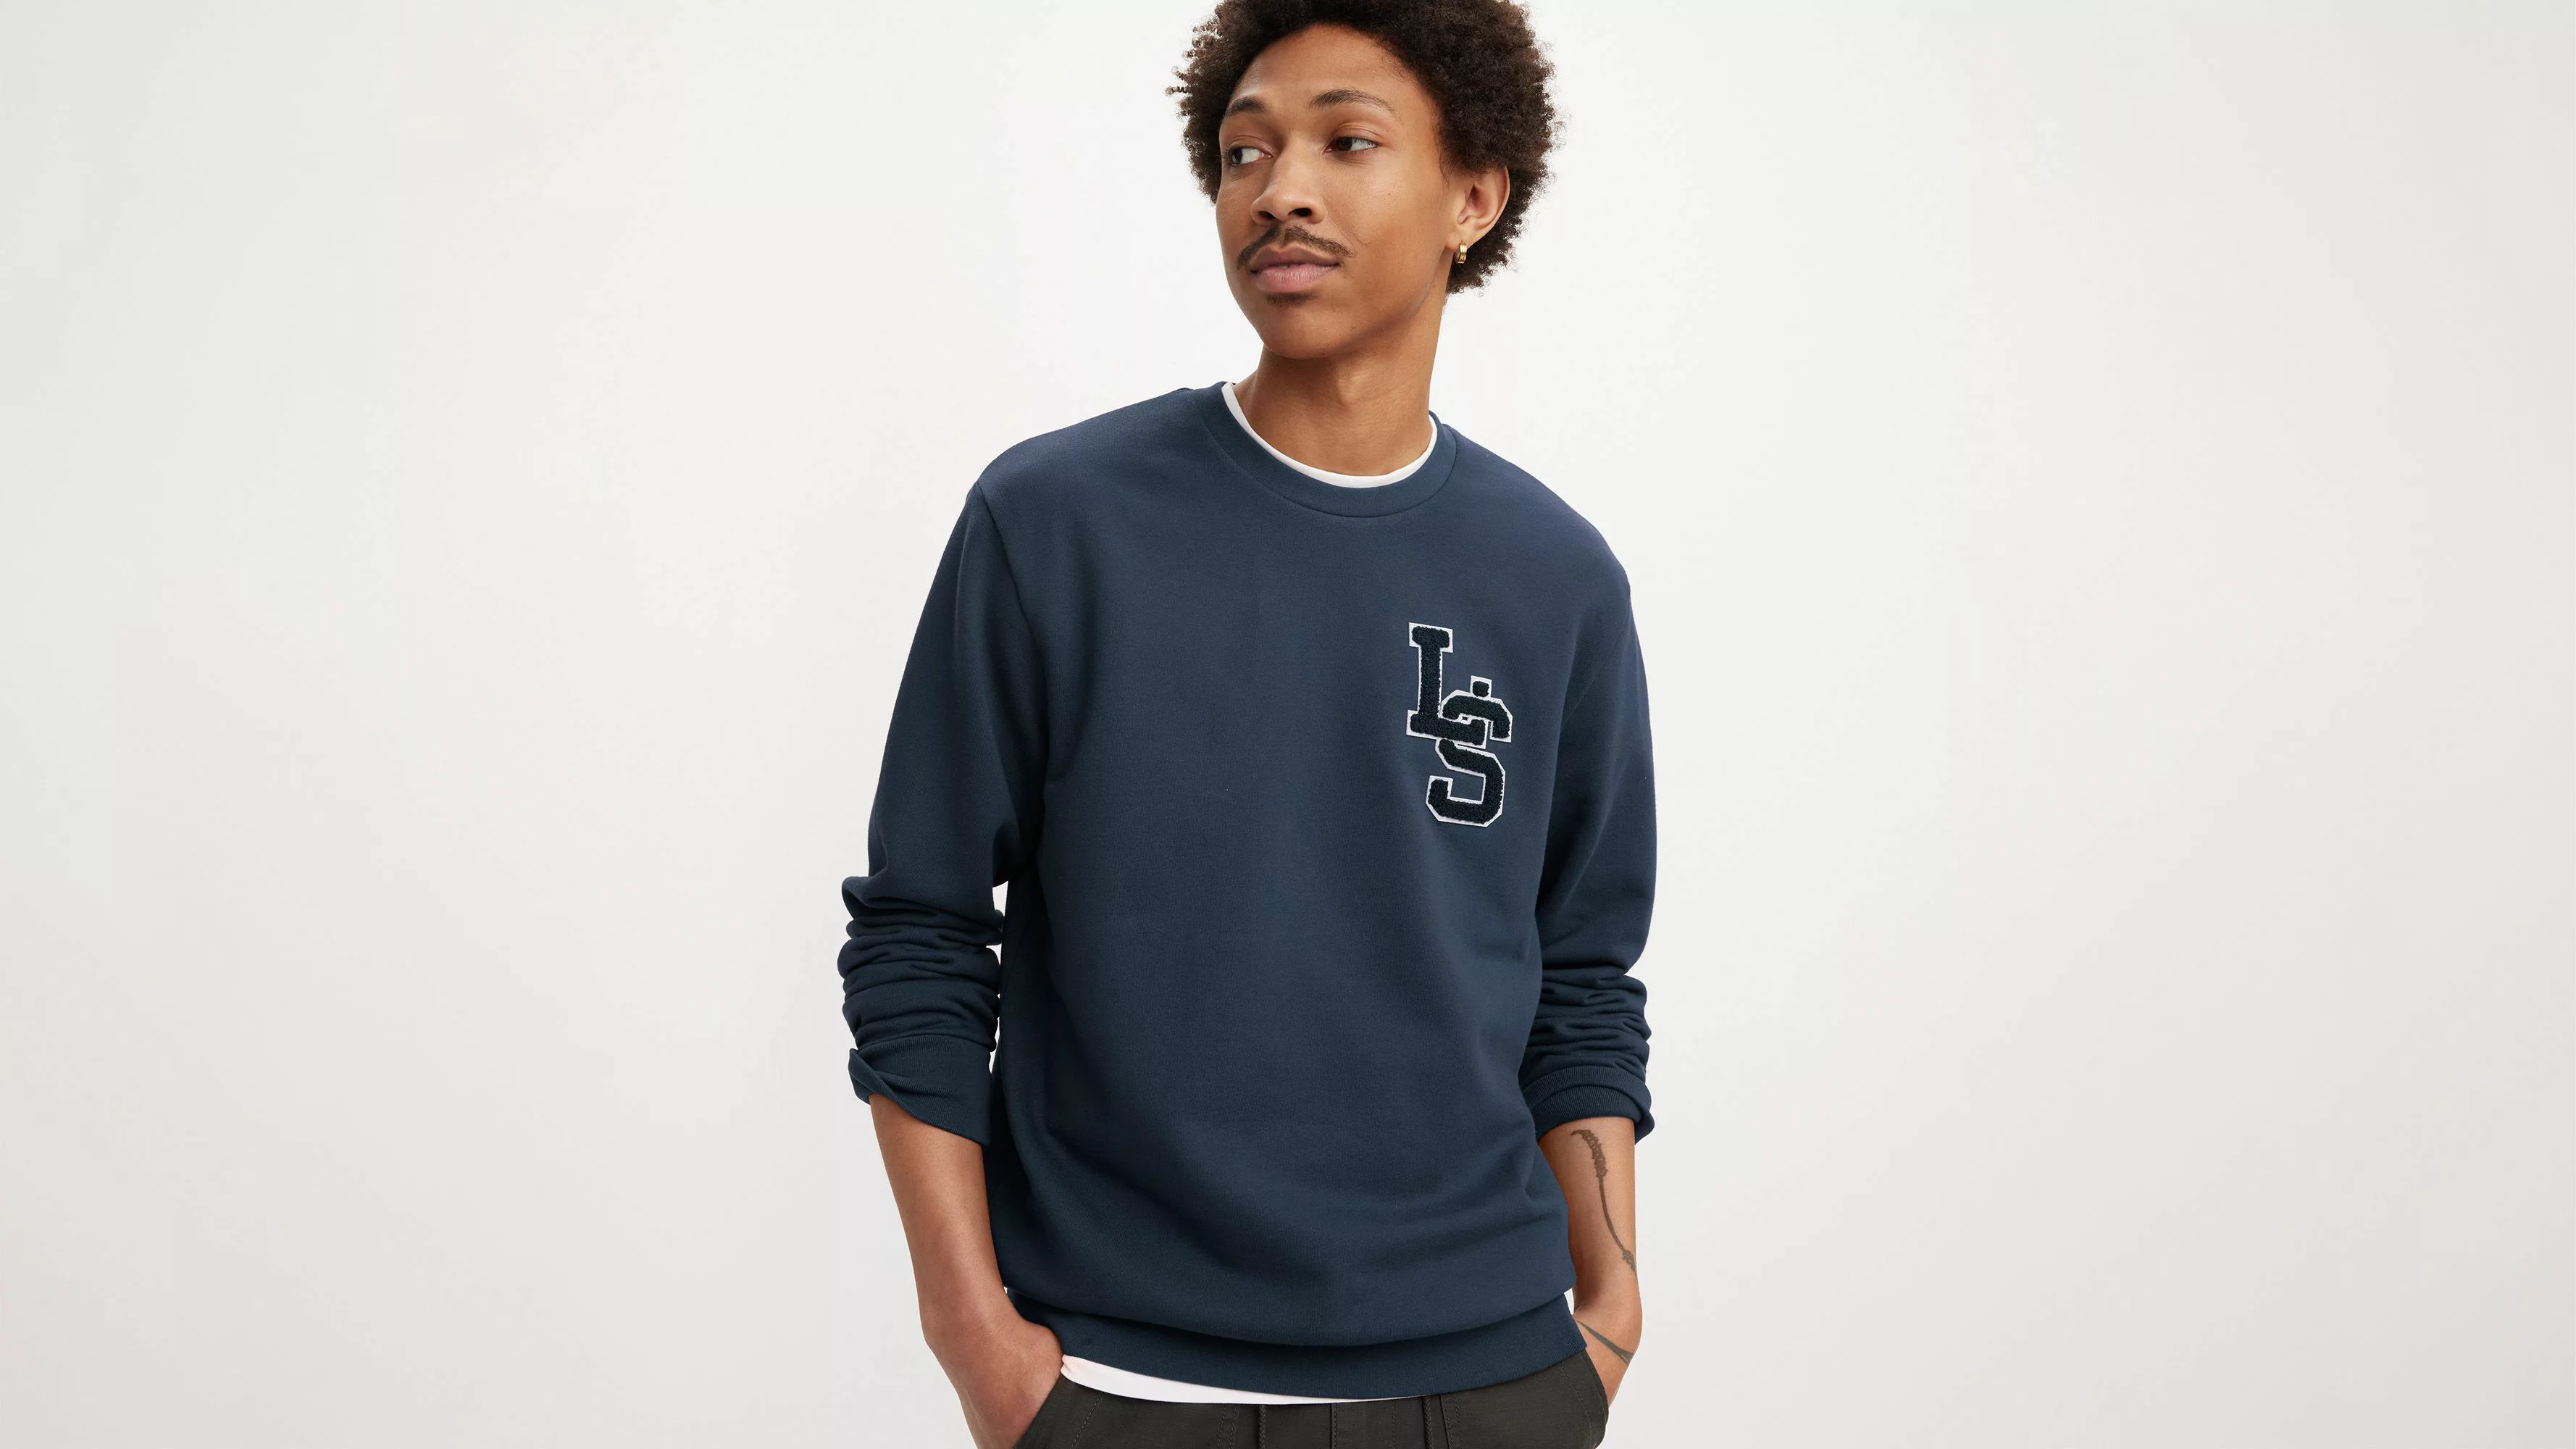 Levis Sweatshirt "STANDARD GRAPHIC CREW" günstig online kaufen